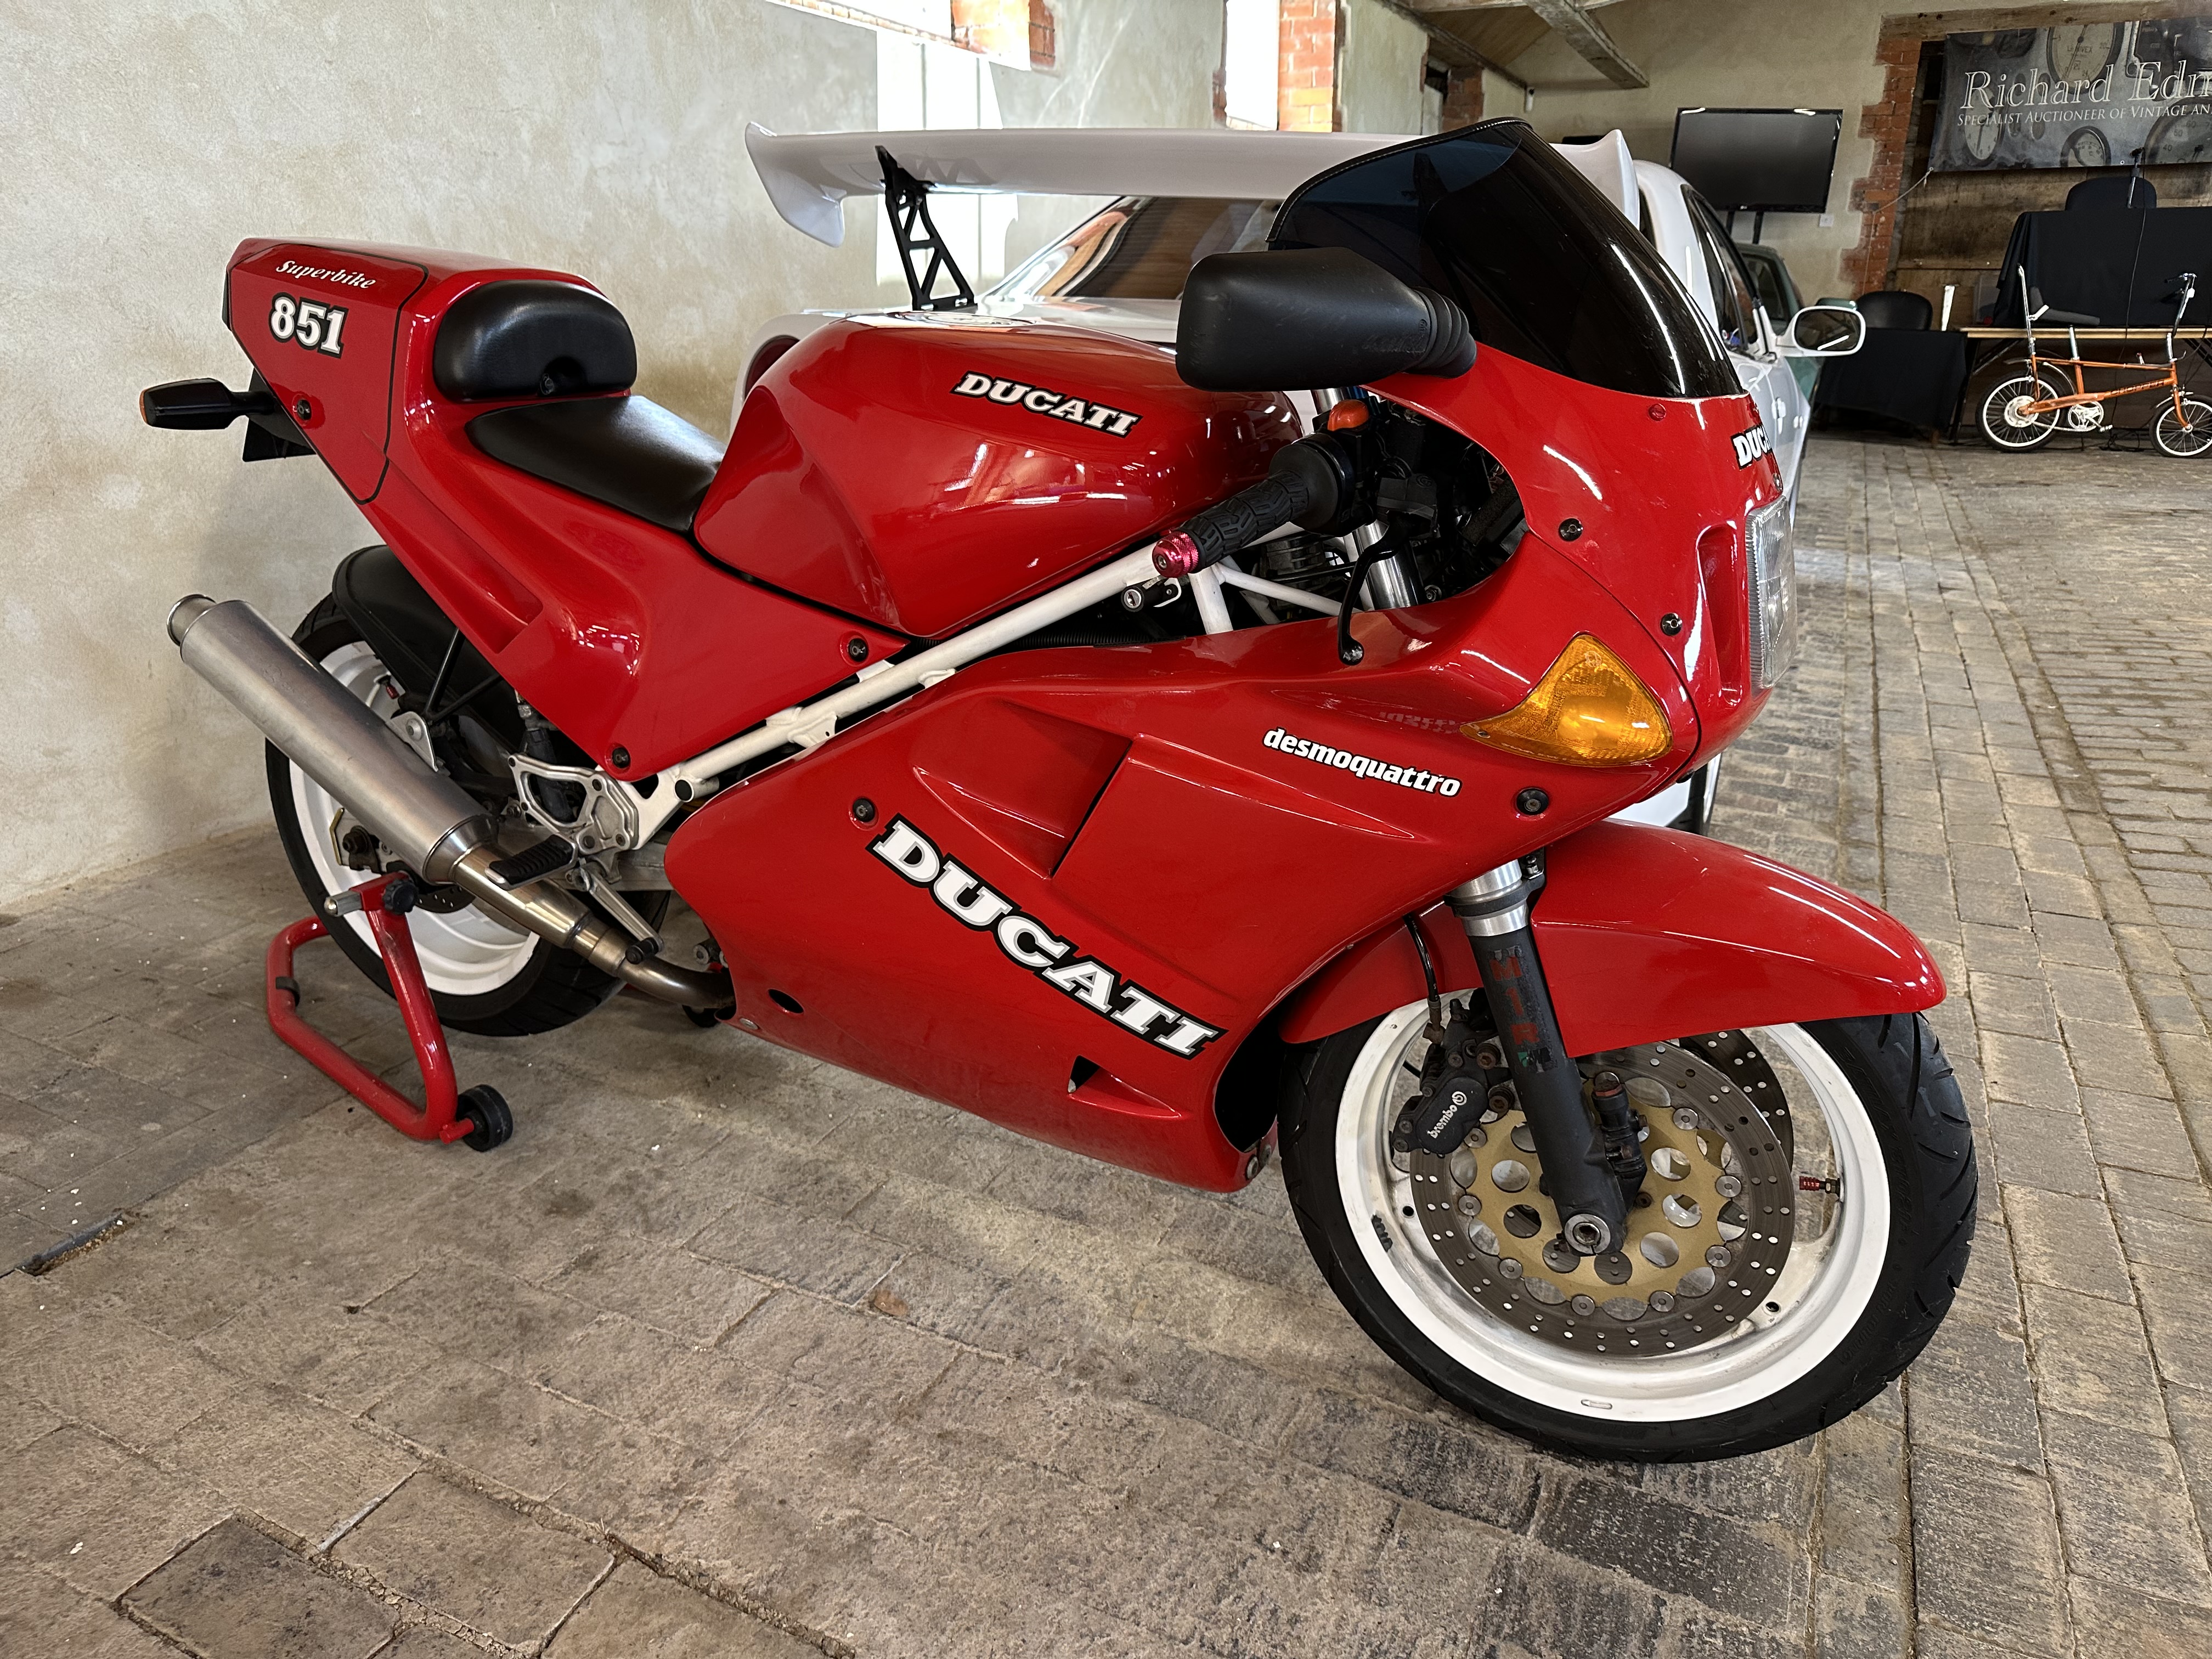 1990 Ducati 851 SP Reg. no. G996 GSX Frame no. 000412 Engine no. 000391